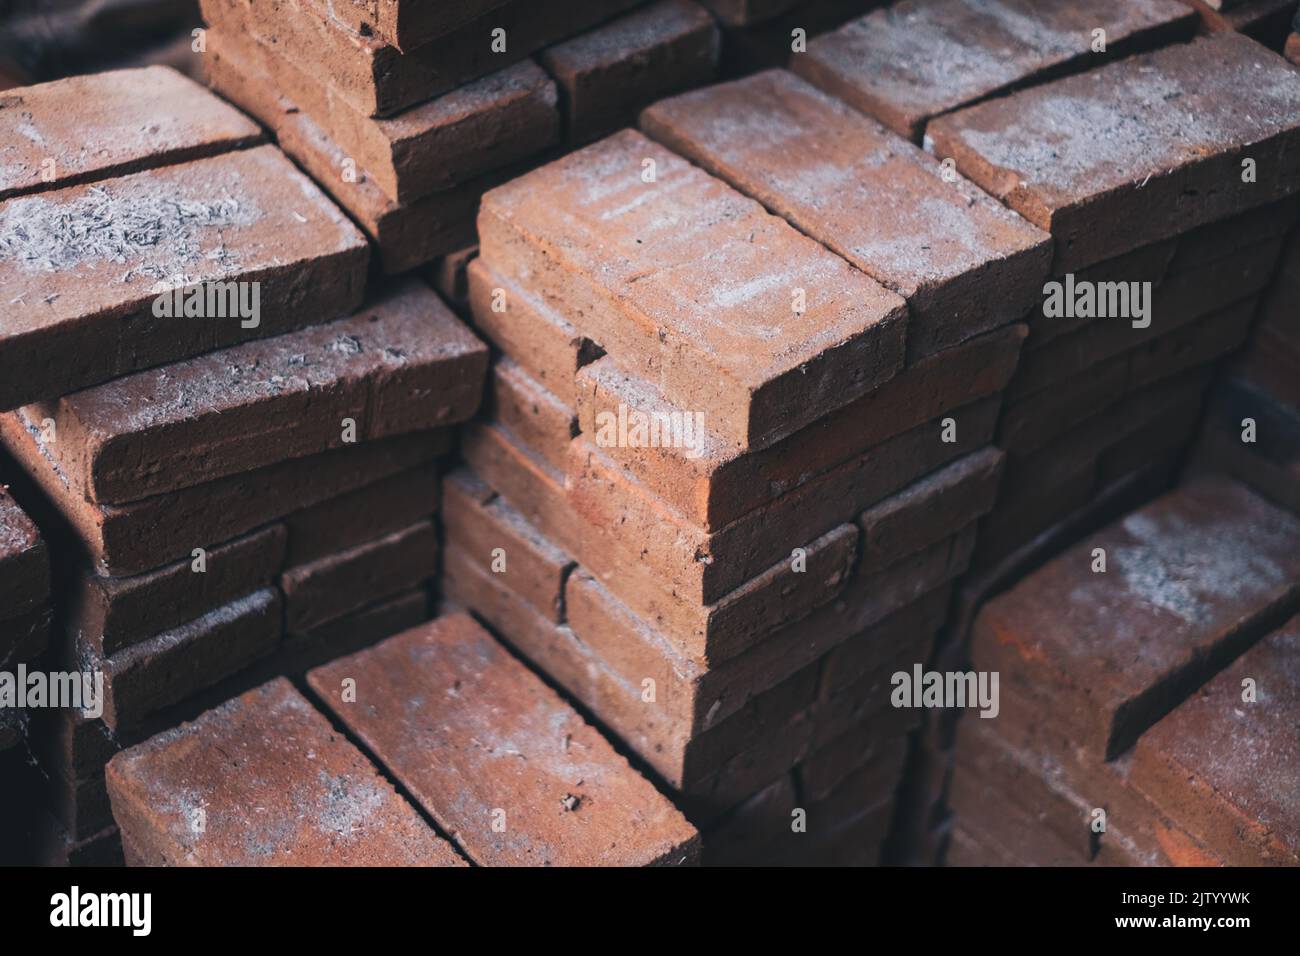 Piles de briques pleines récemment faites en argile (terre cuite) utilisées pour l'aménagement paysager, et autres travaux de construction. Mise au point sélective. Banque D'Images